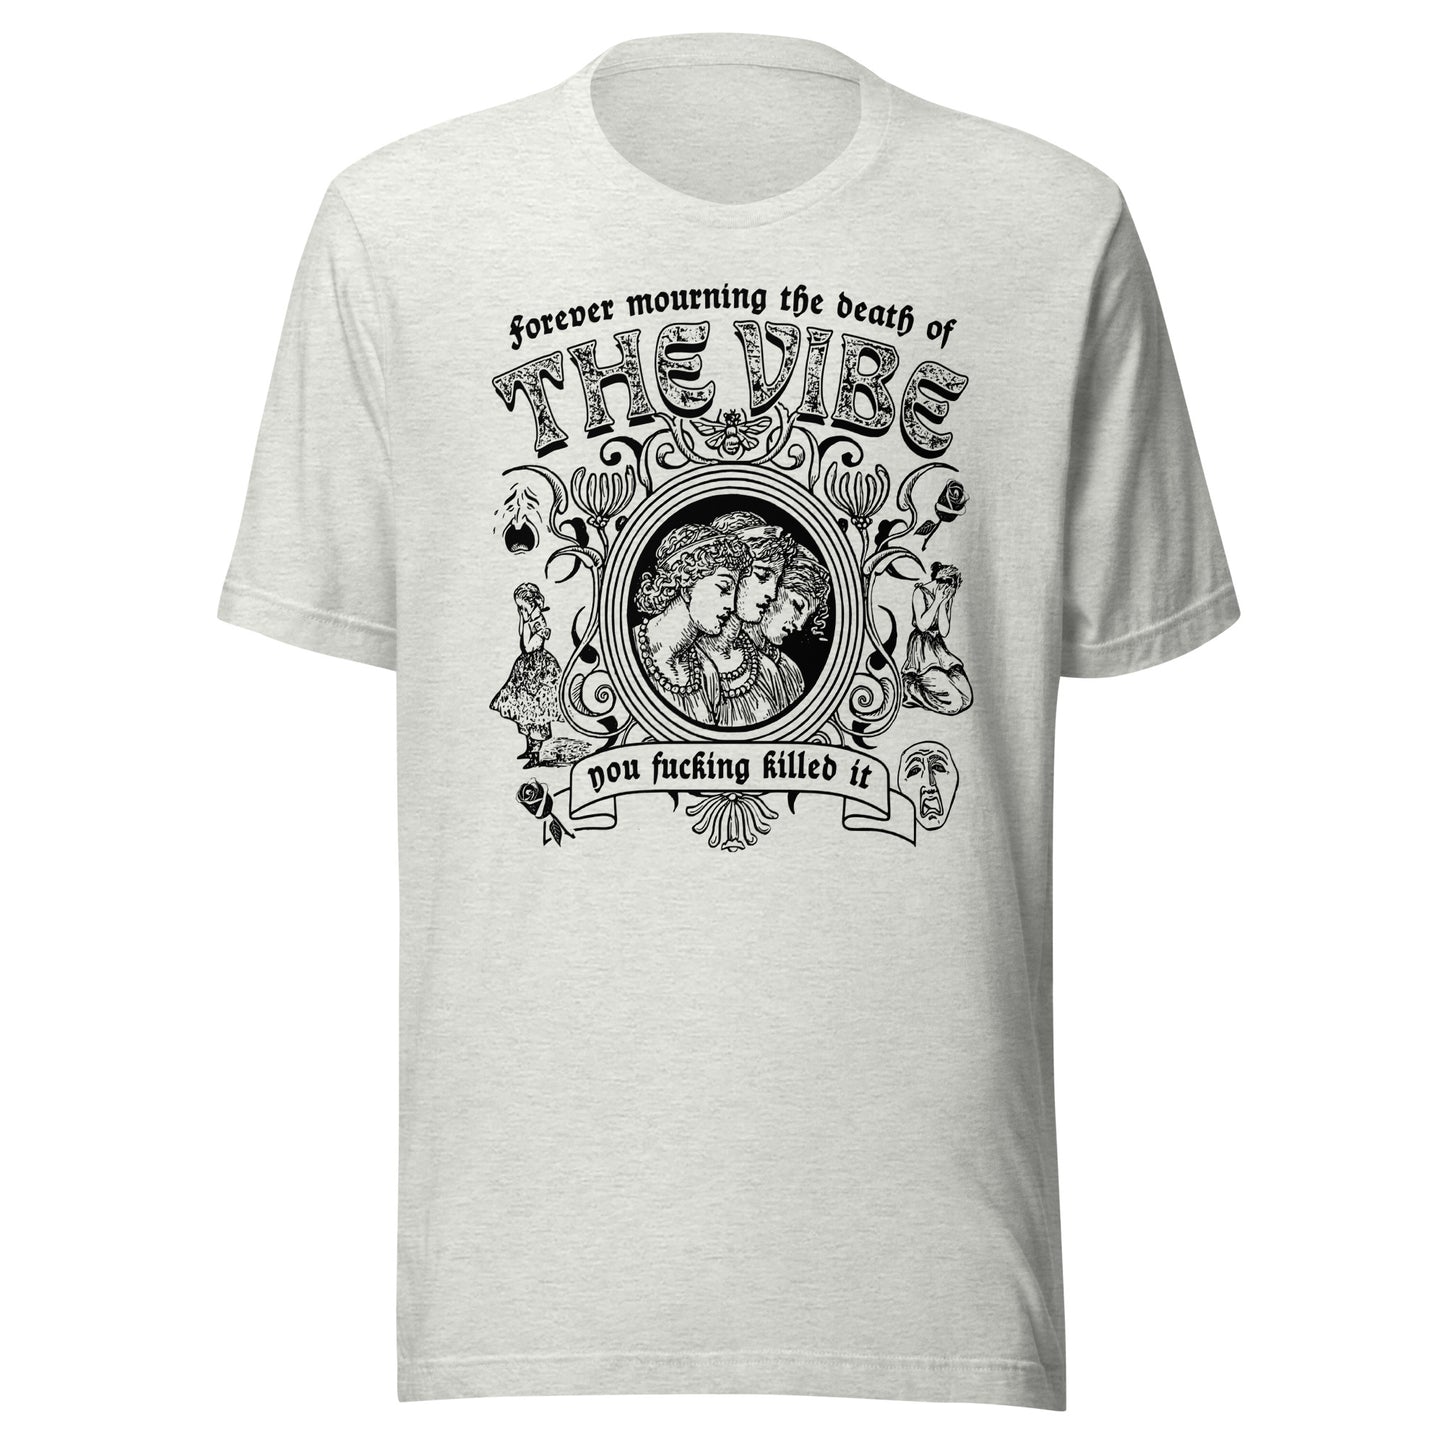 "Mourning The Vibe" Unisex t-shirt